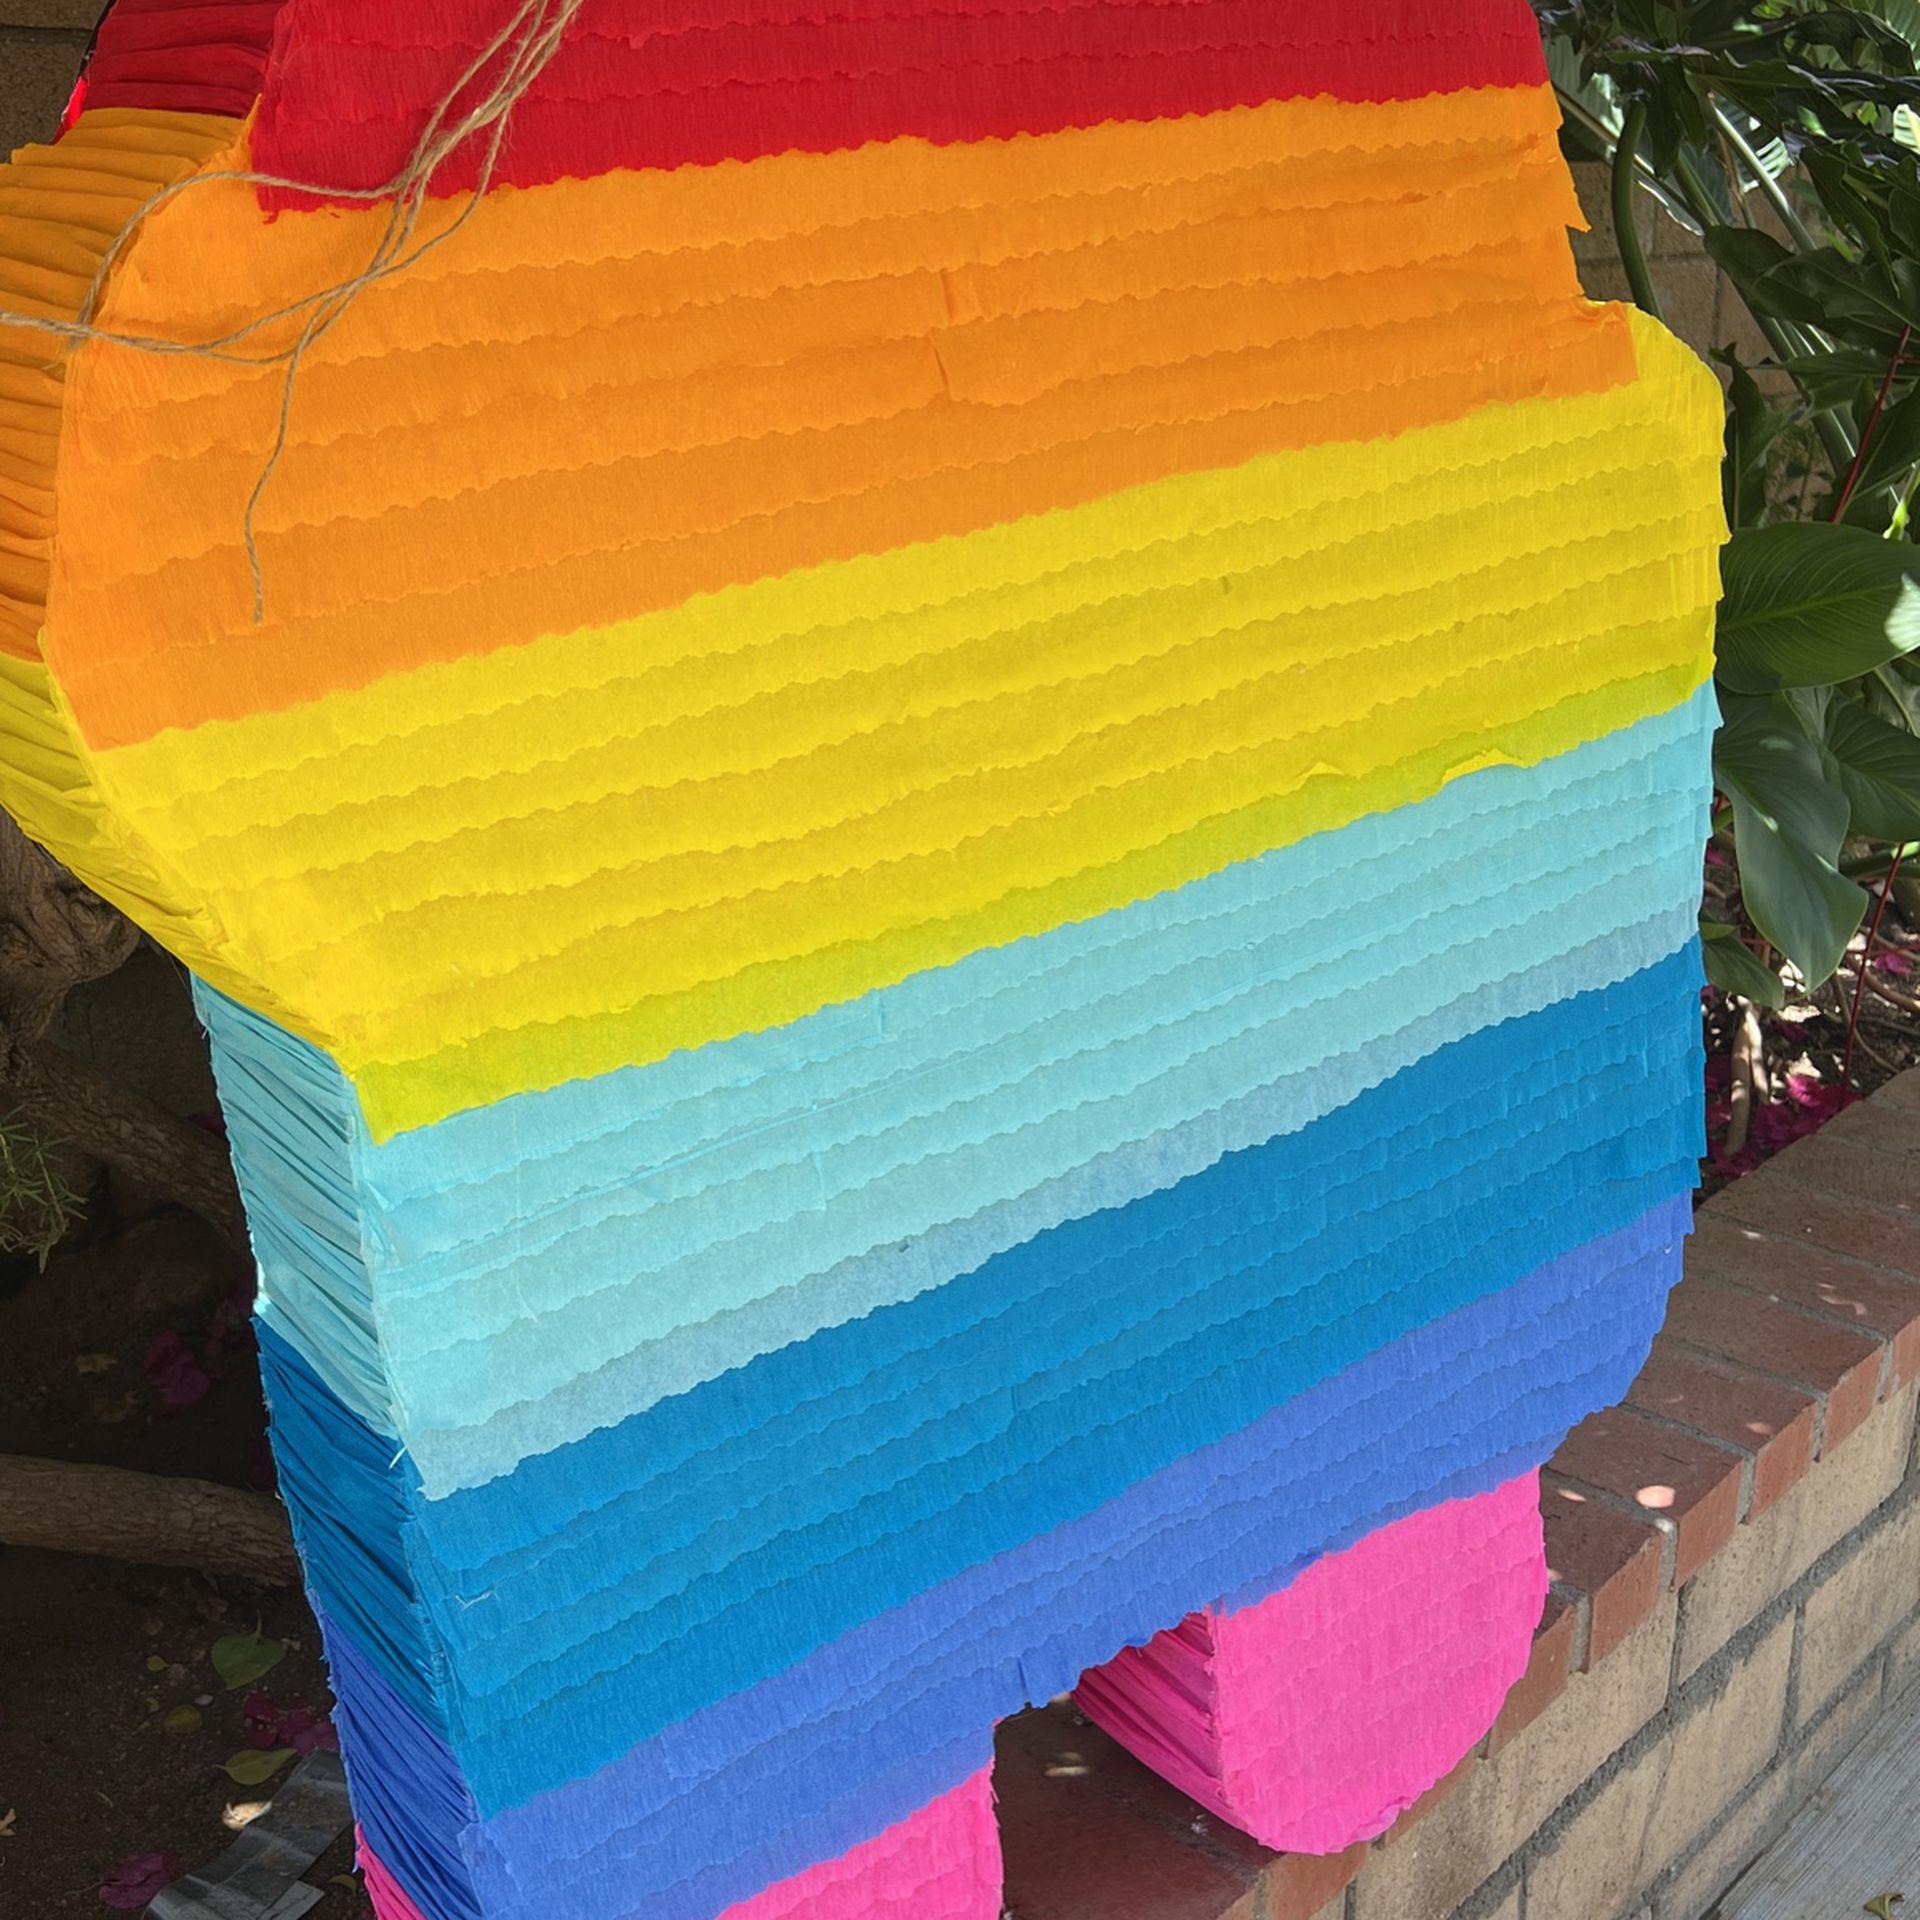 18$ Piñata Grande Multicolor Estamos En Riverside for Sale in Riverside, CA  - OfferUp